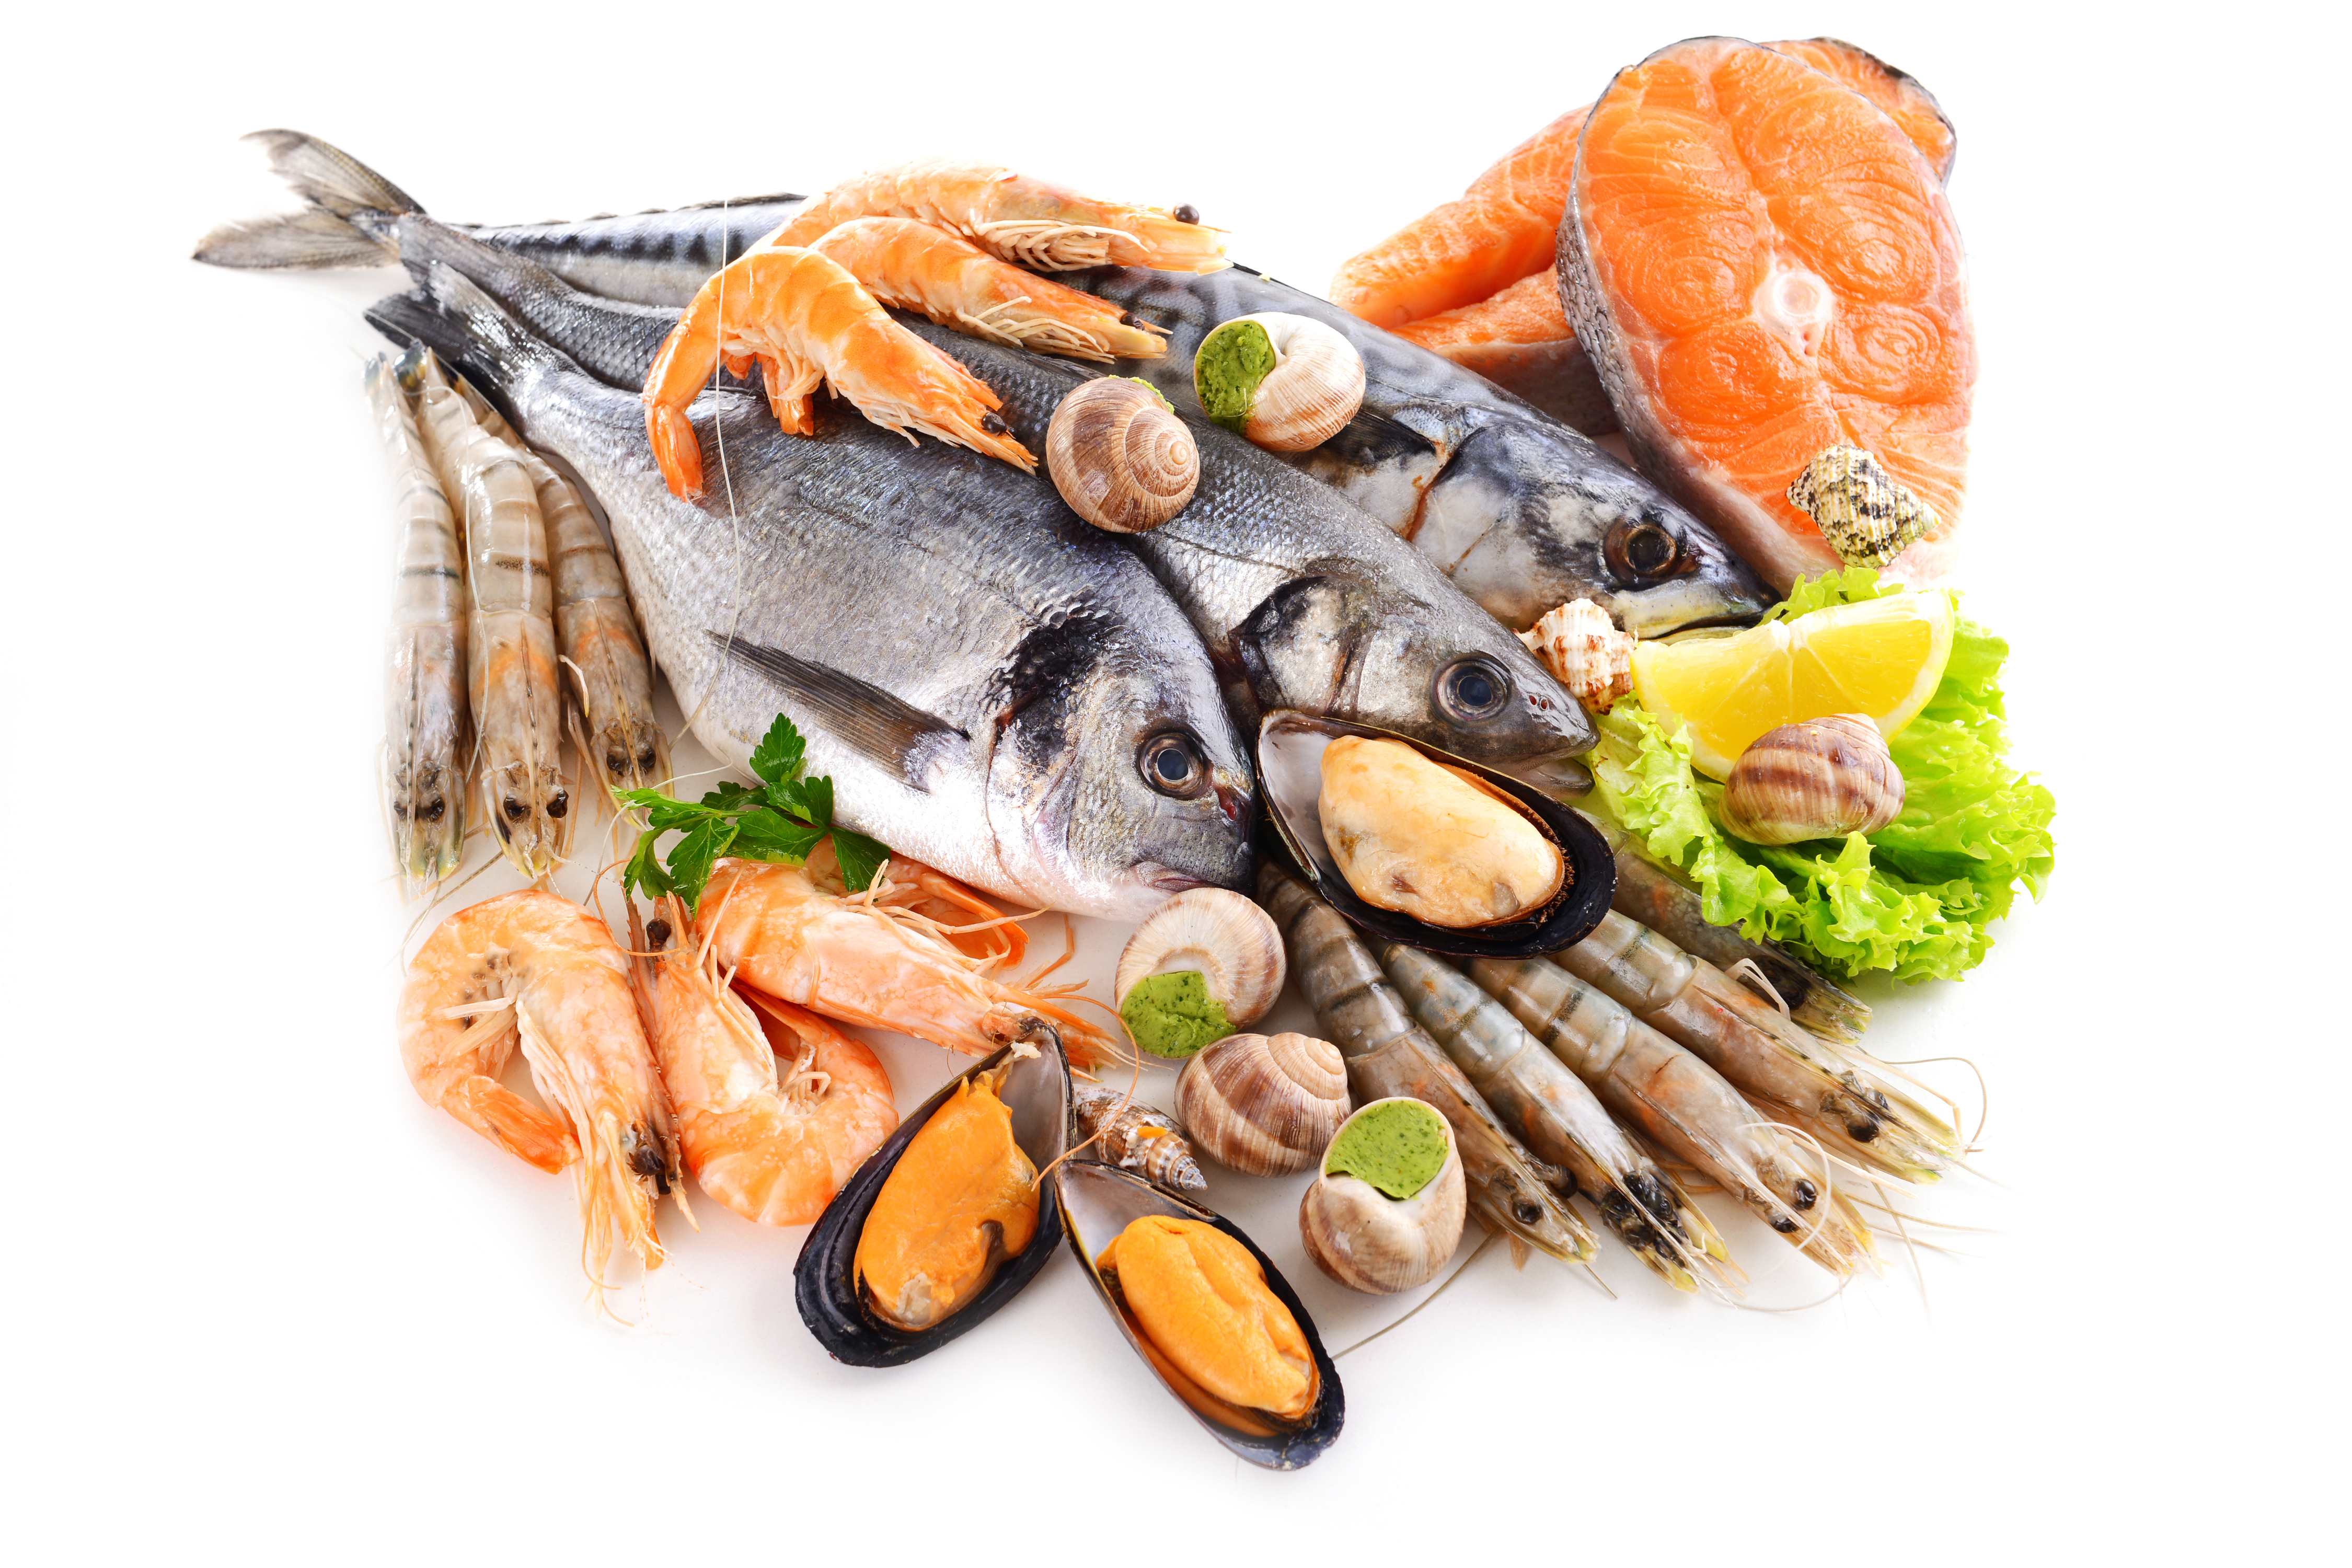 Fish product. Рыба и морепродукты. Мор рыбы. Морепродукты на белом фоне. Рыба и рыбные продукты.